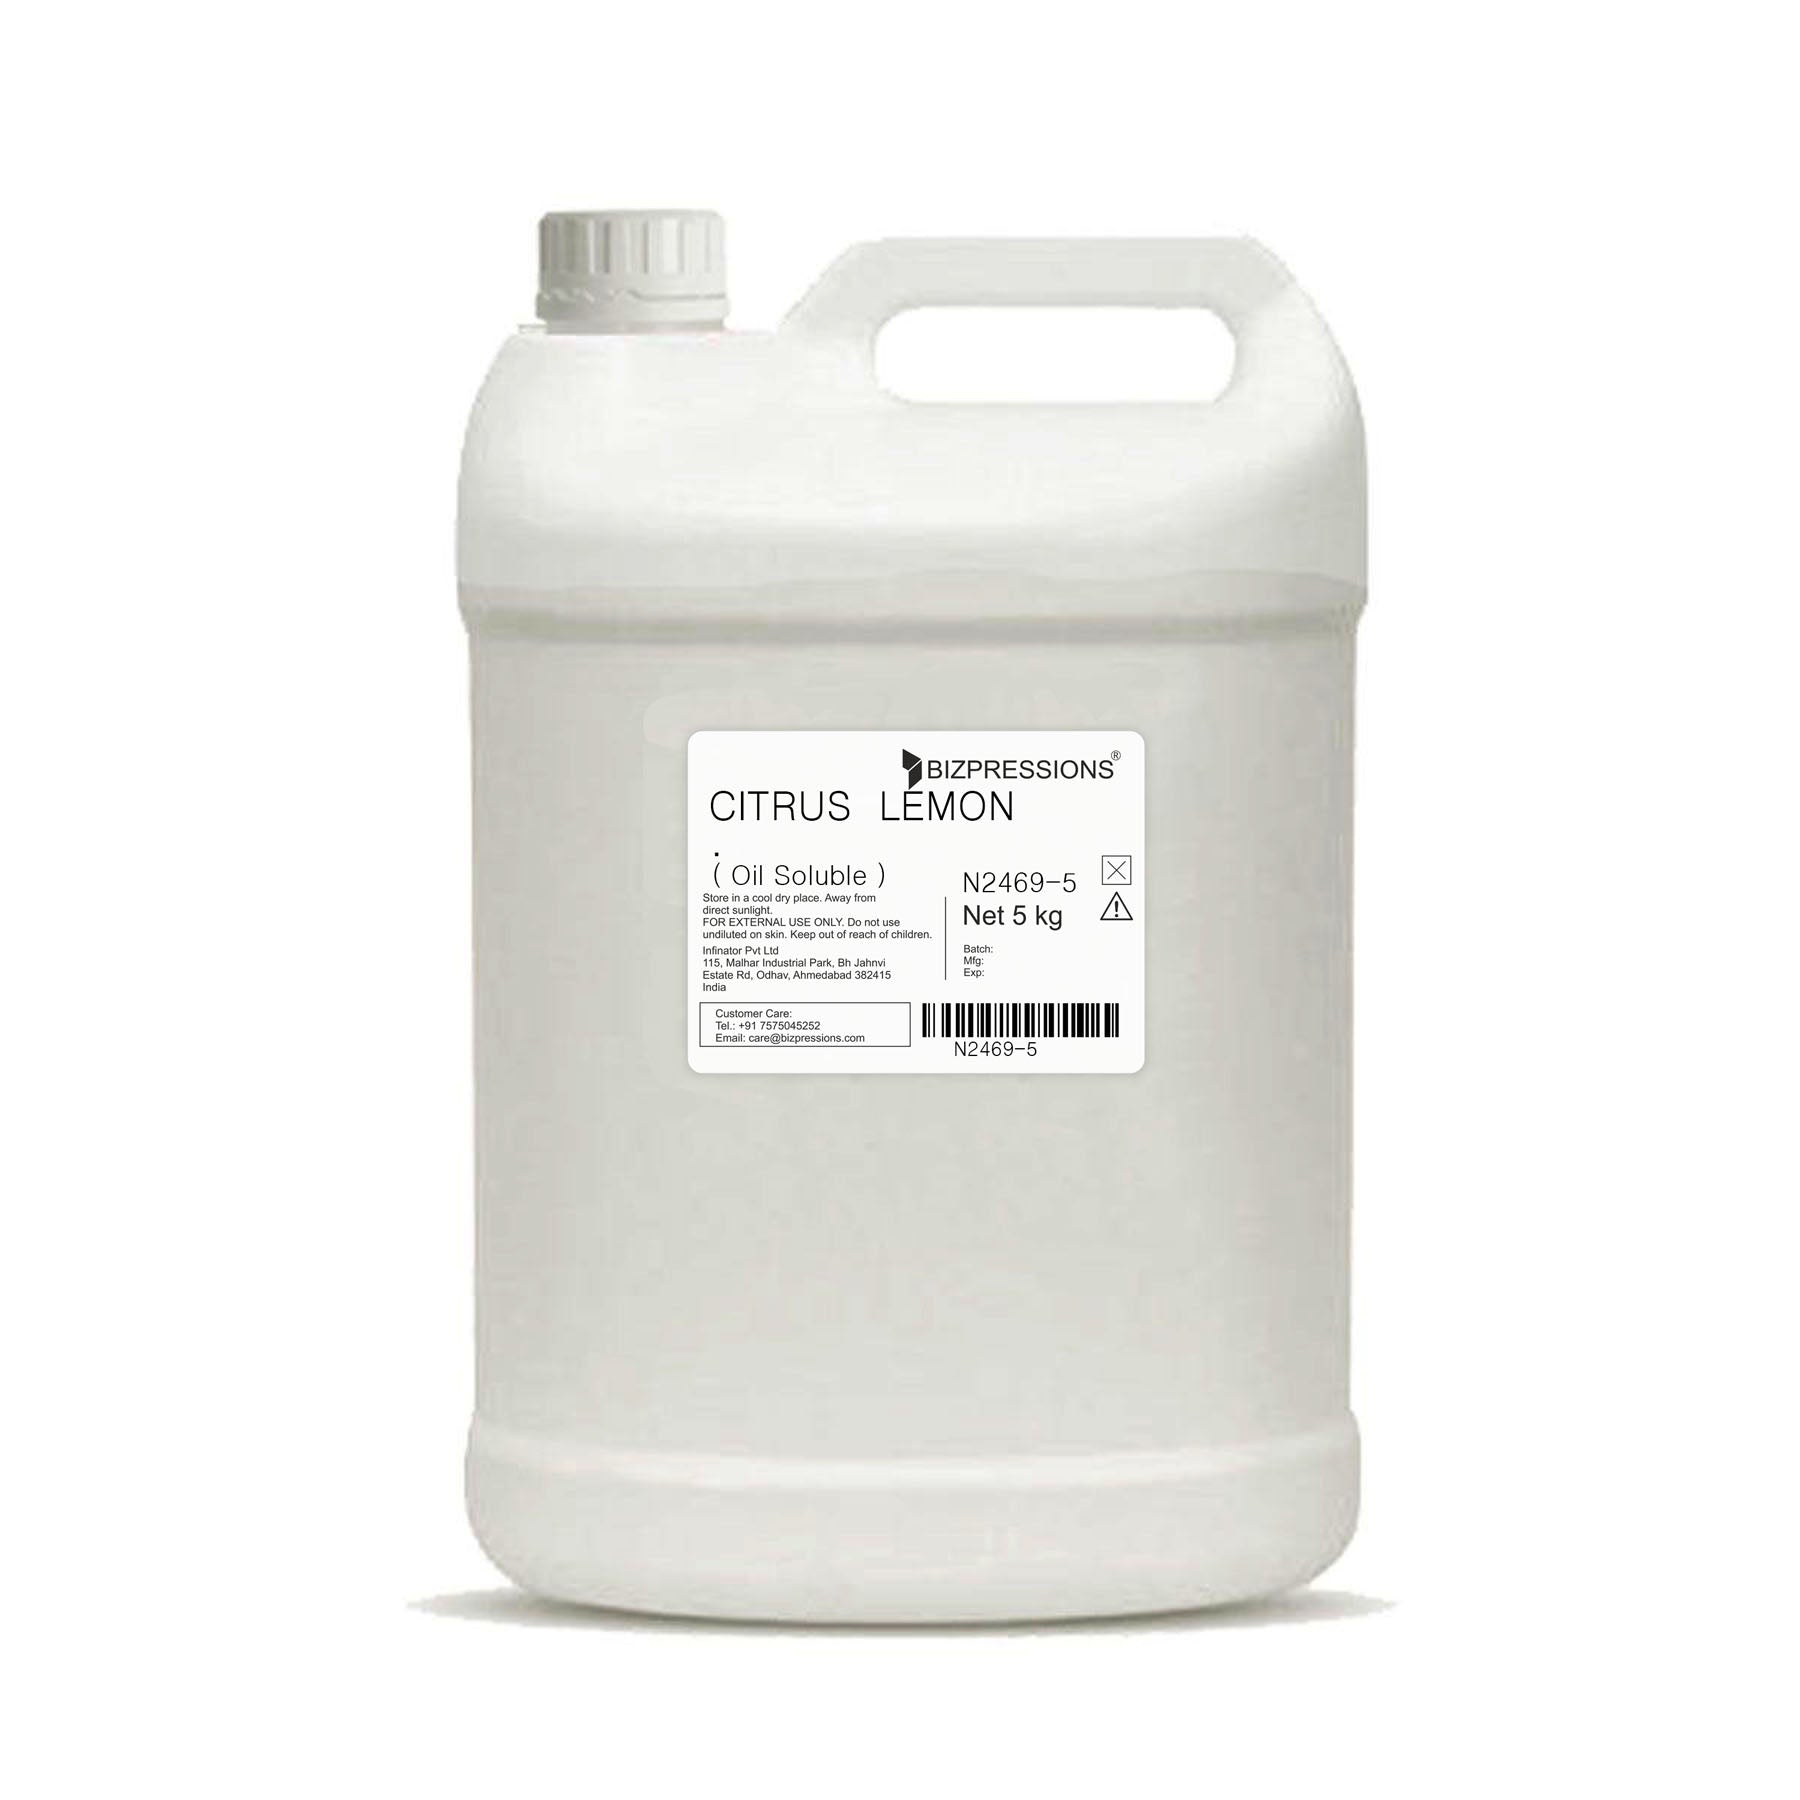 CITRUS LEMON - Fragrance ( Oil Soluble ) - 5 kg